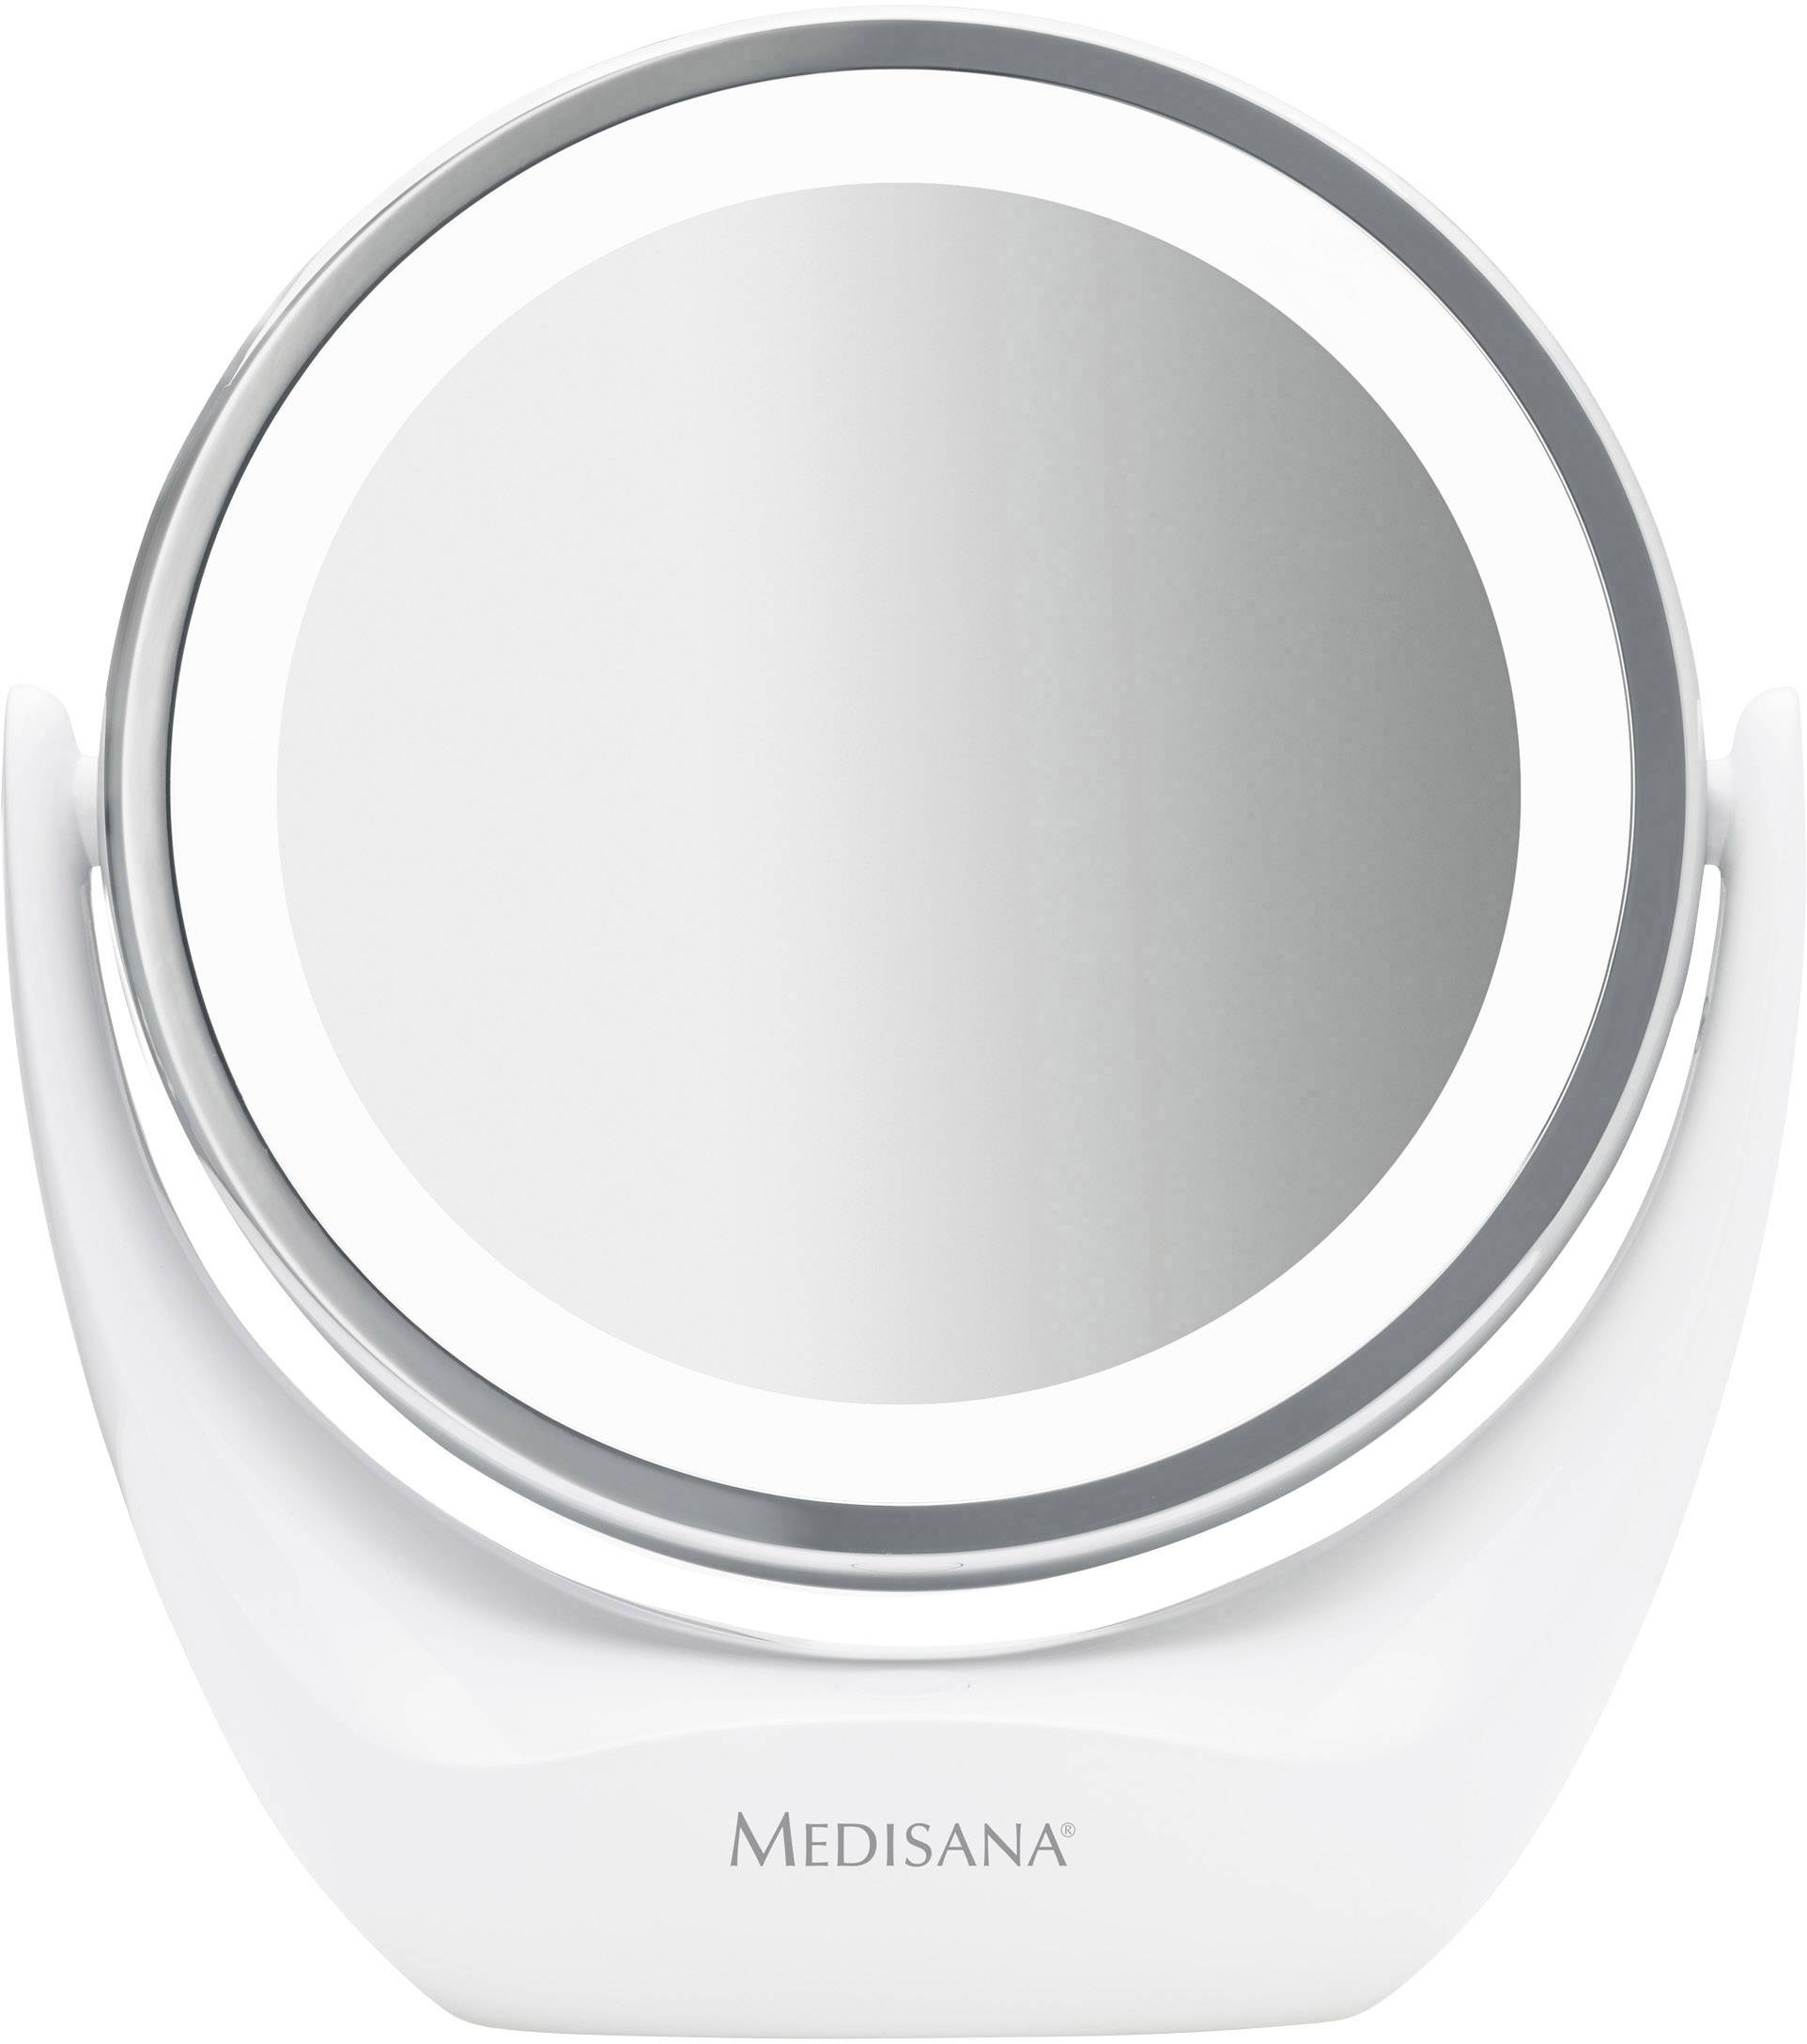 Medisana CM 835 Make-up mirror | Conrad.com